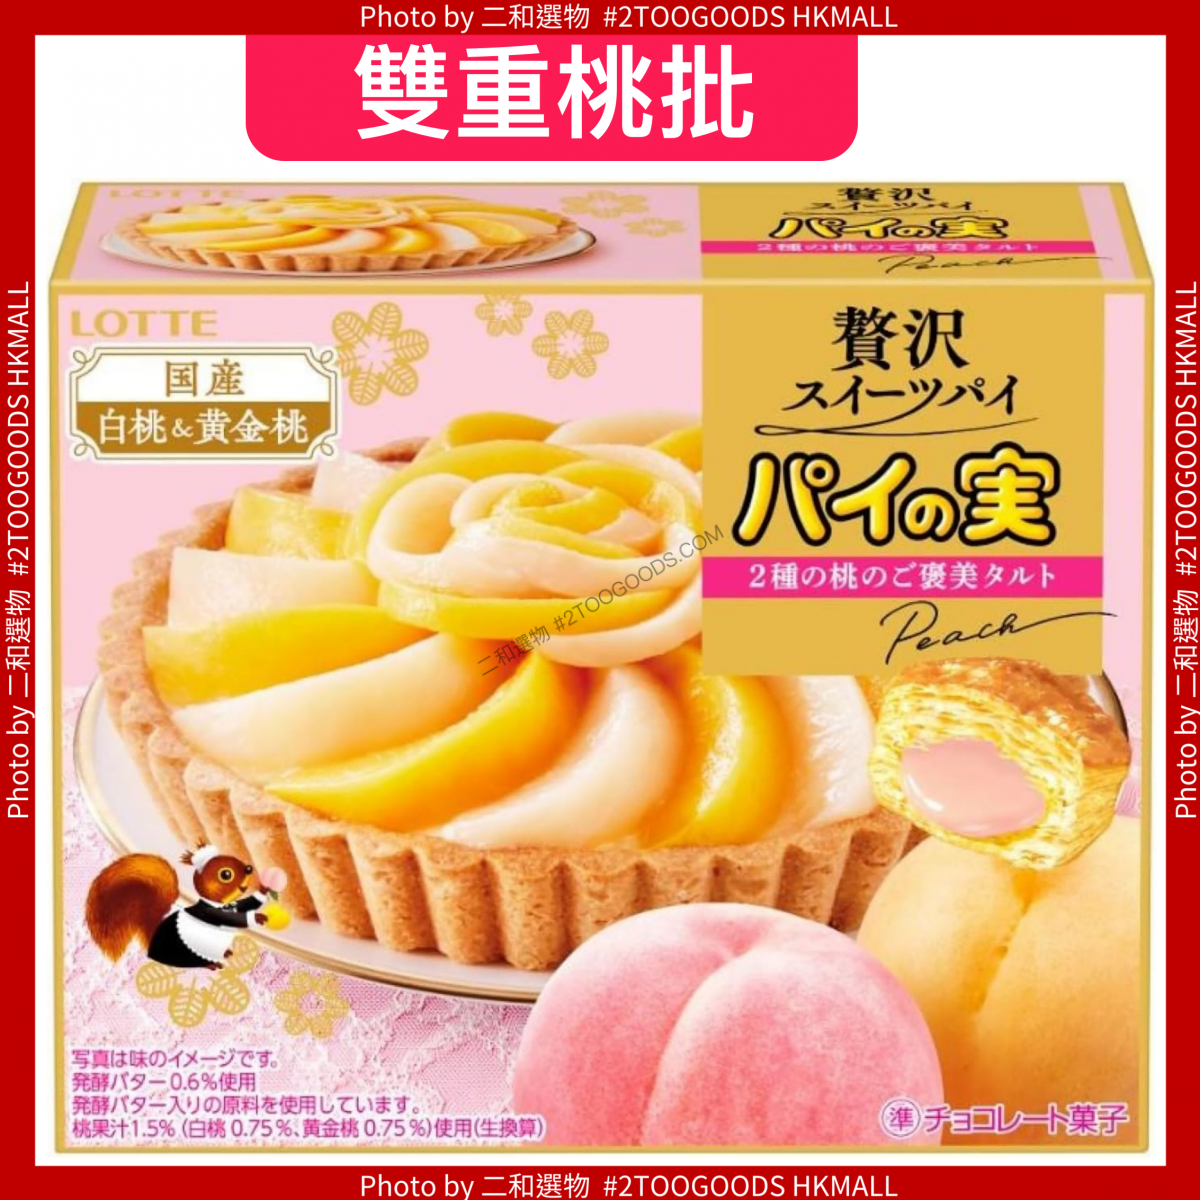 雙重桃批 樂天派水果 2種桃子組合 69g  (4903333230570) 日本平行進口   日式點心